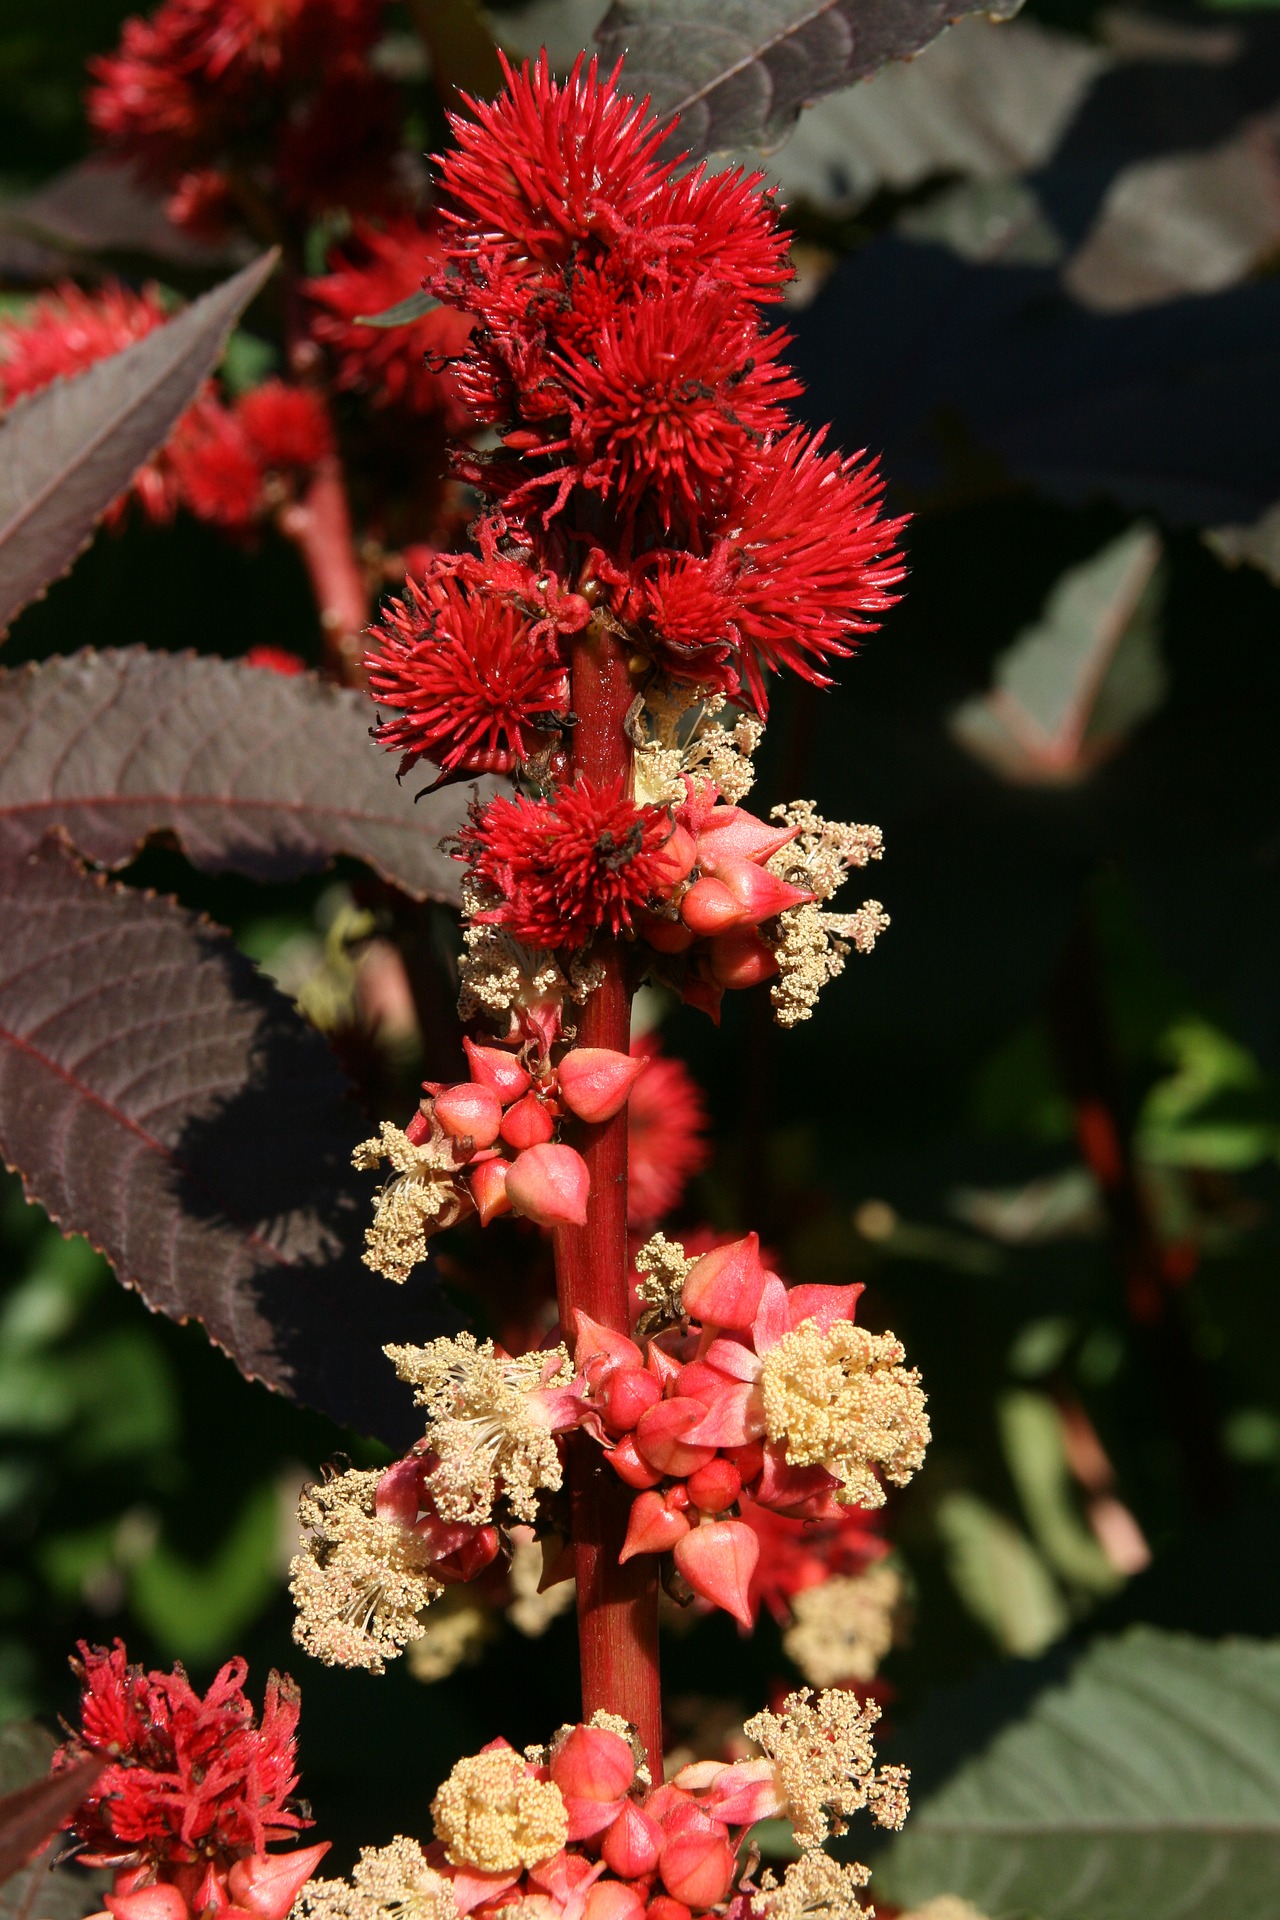 Die Blüten sind getrennt geschlechtlich, aber sowohl männliche als auch weibliche an der gleichen Pflanze. (Bild Pixabay)